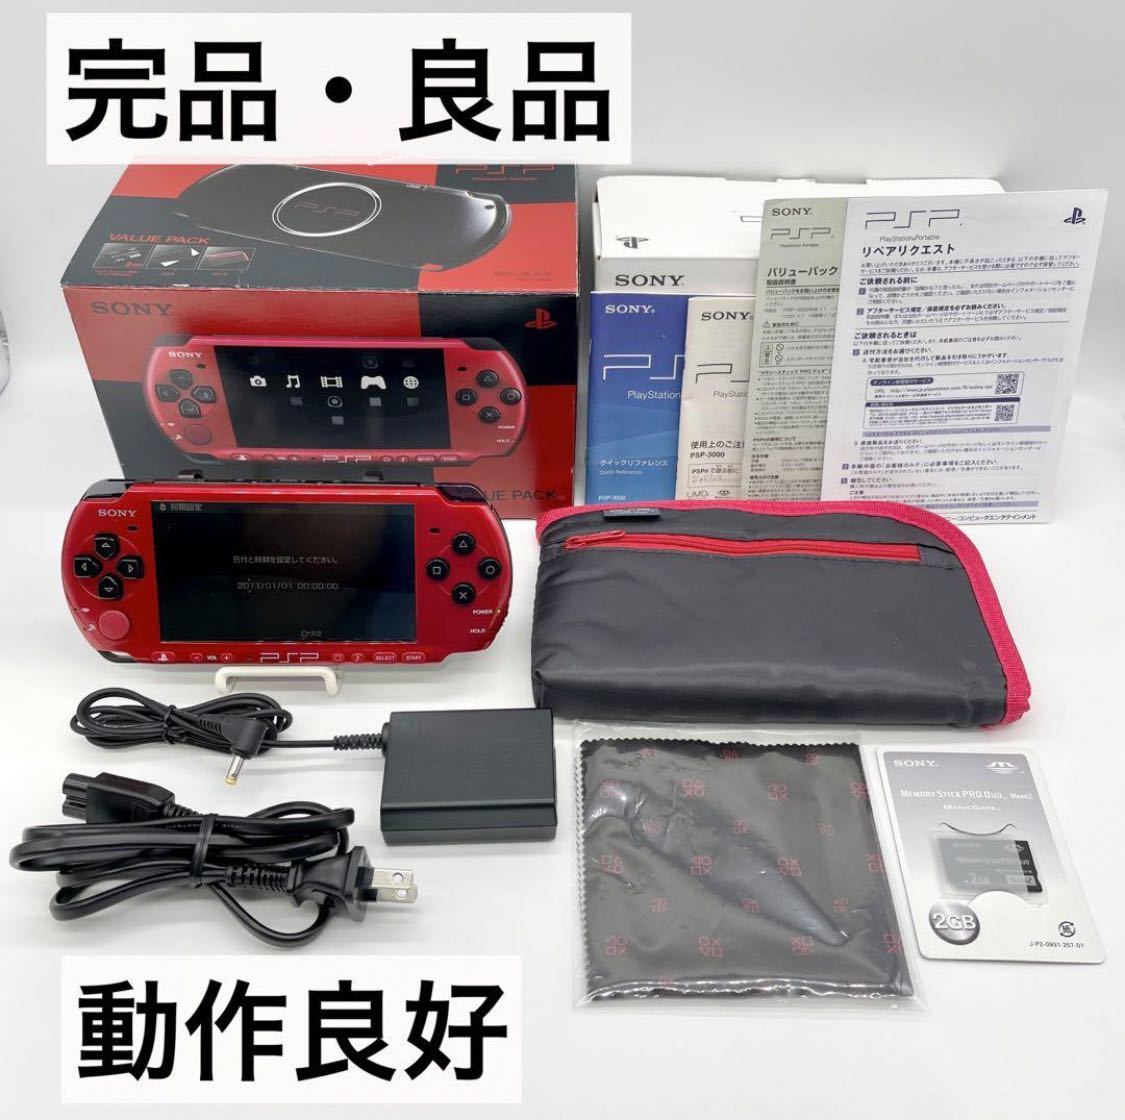 新規購入 【完品・良品】PSP-3000 レッド ブラック バリューパック 本体 動作品 PSP3000シリーズ